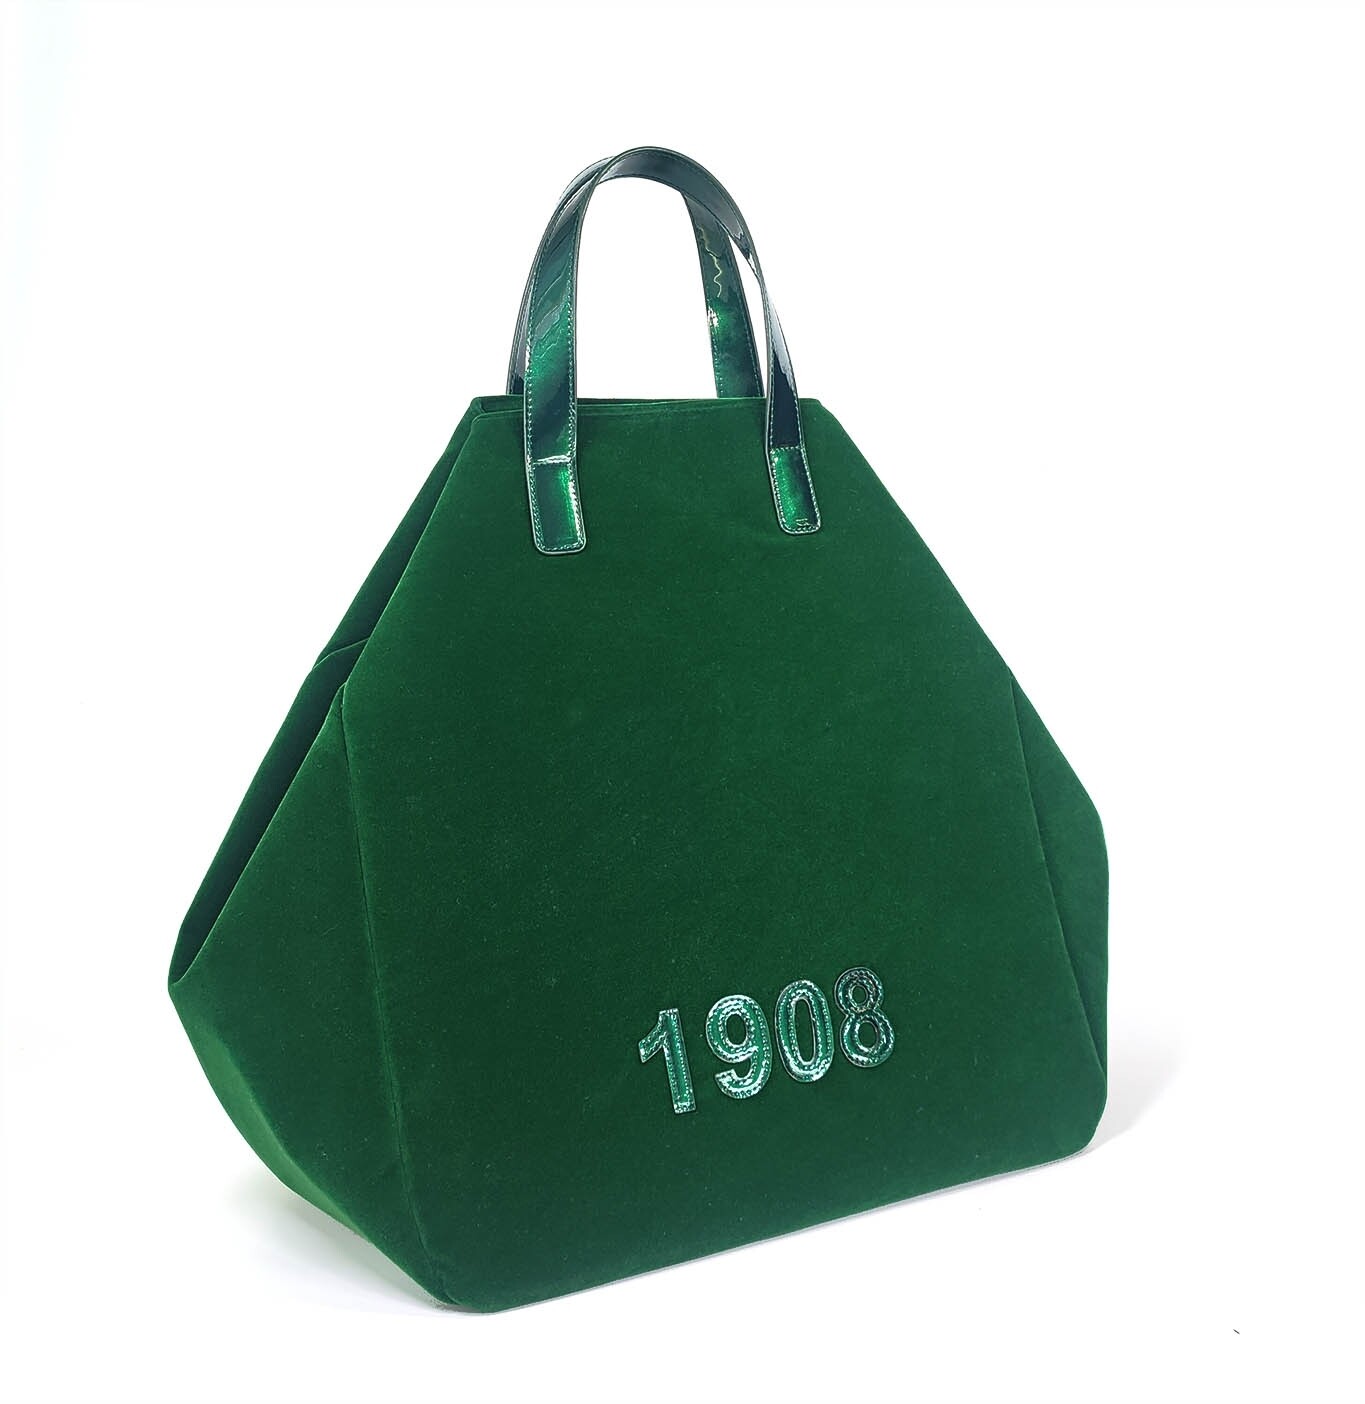 AKA 1908 -Velveteen Tote Emerald